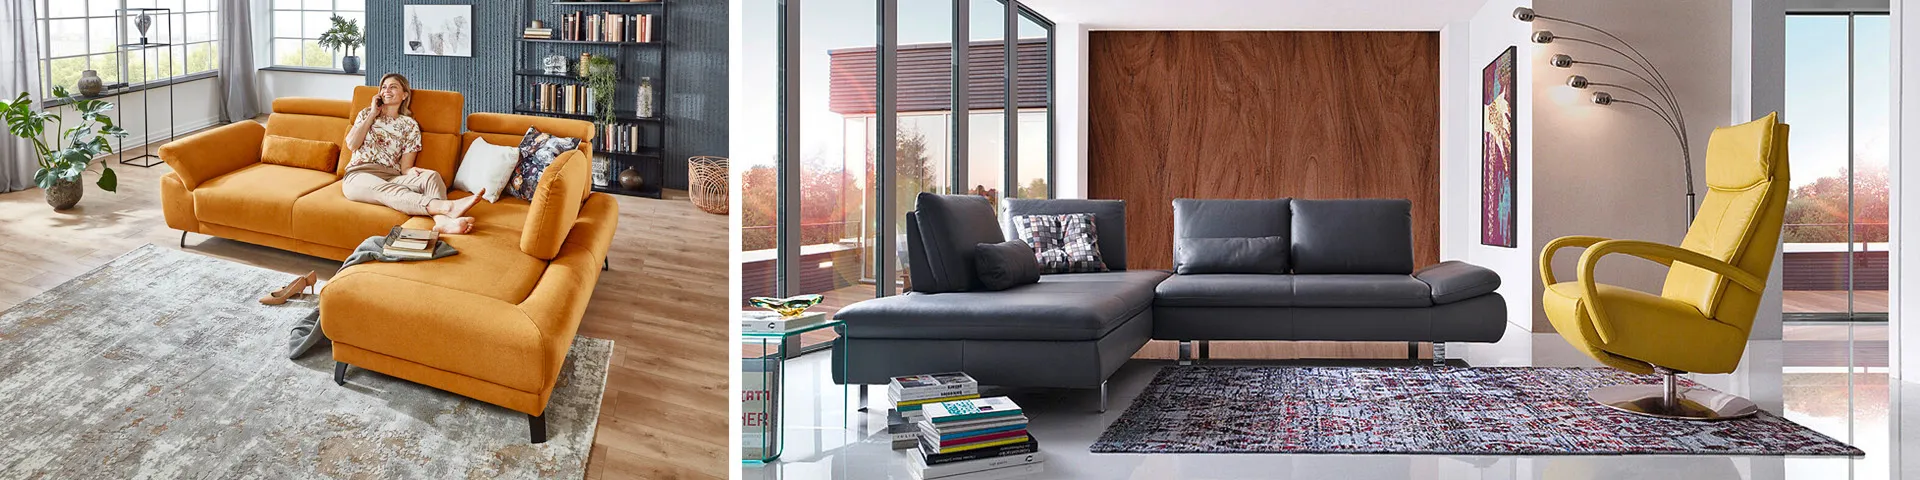 Ob groß, klein, aus Stoff oder Leder – das Sofa sollte zu Ihrem Einrichtungsstil passen.